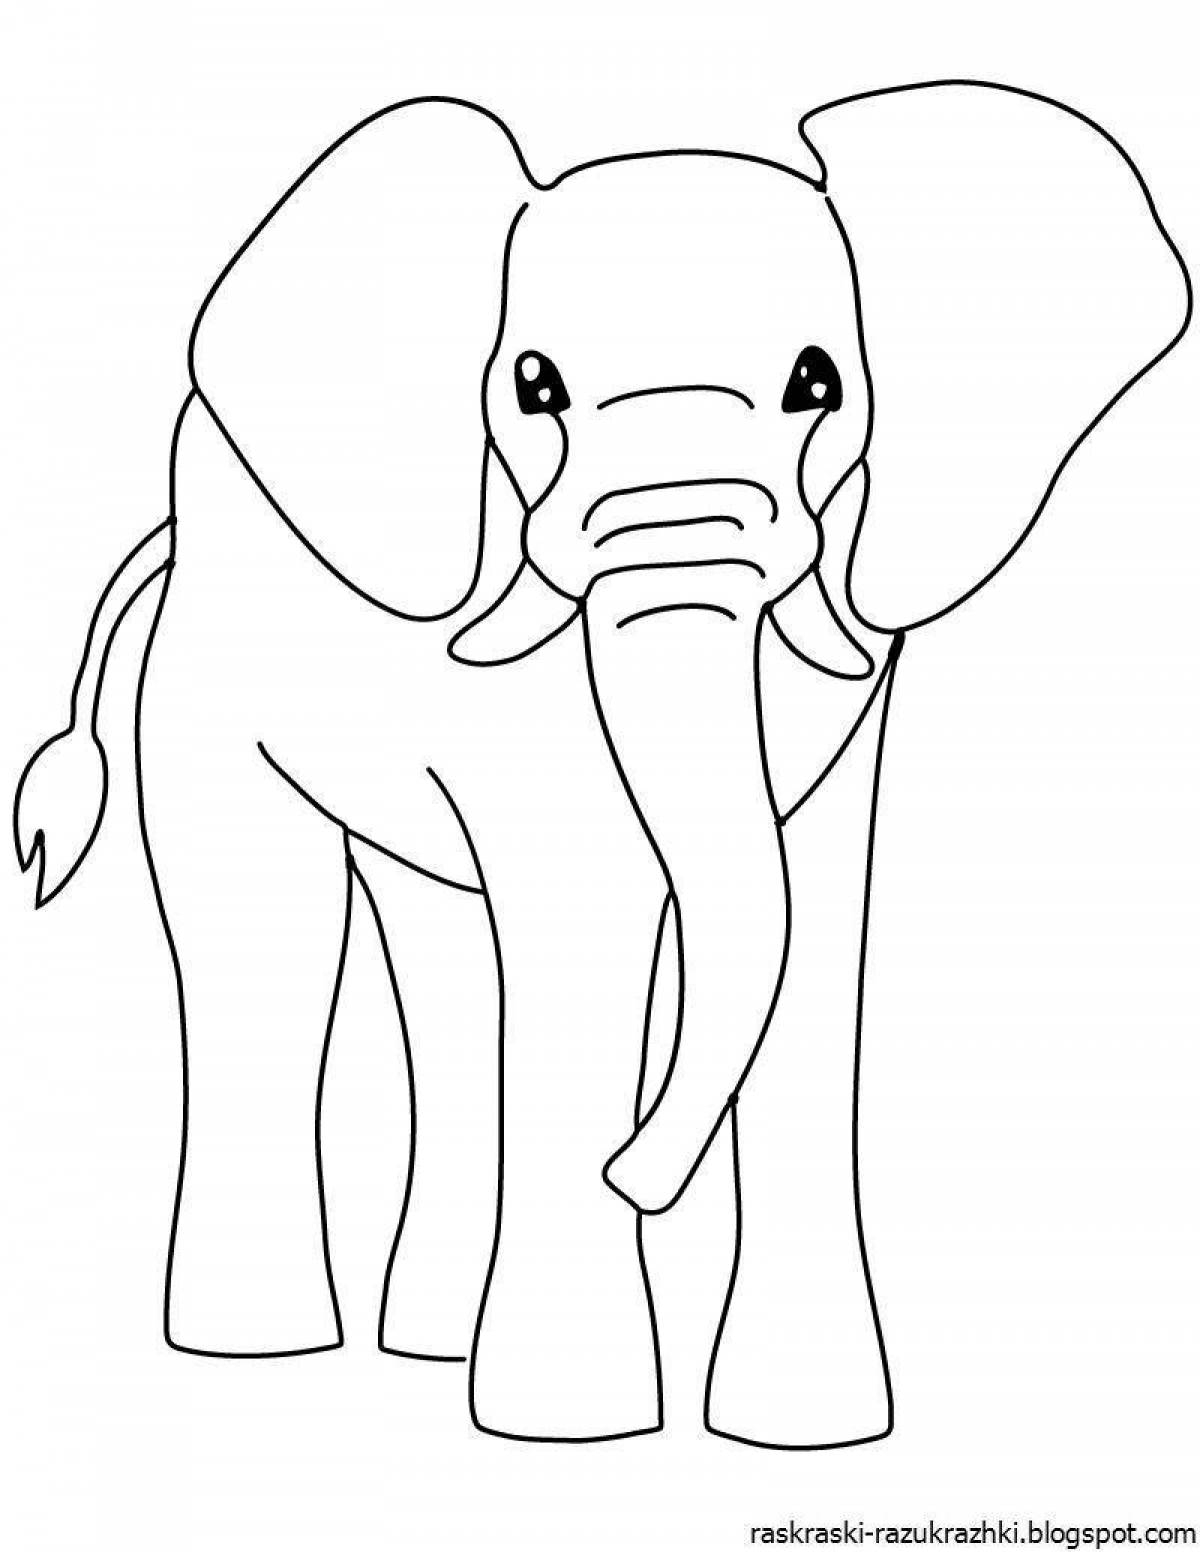 Изящная раскраска слона